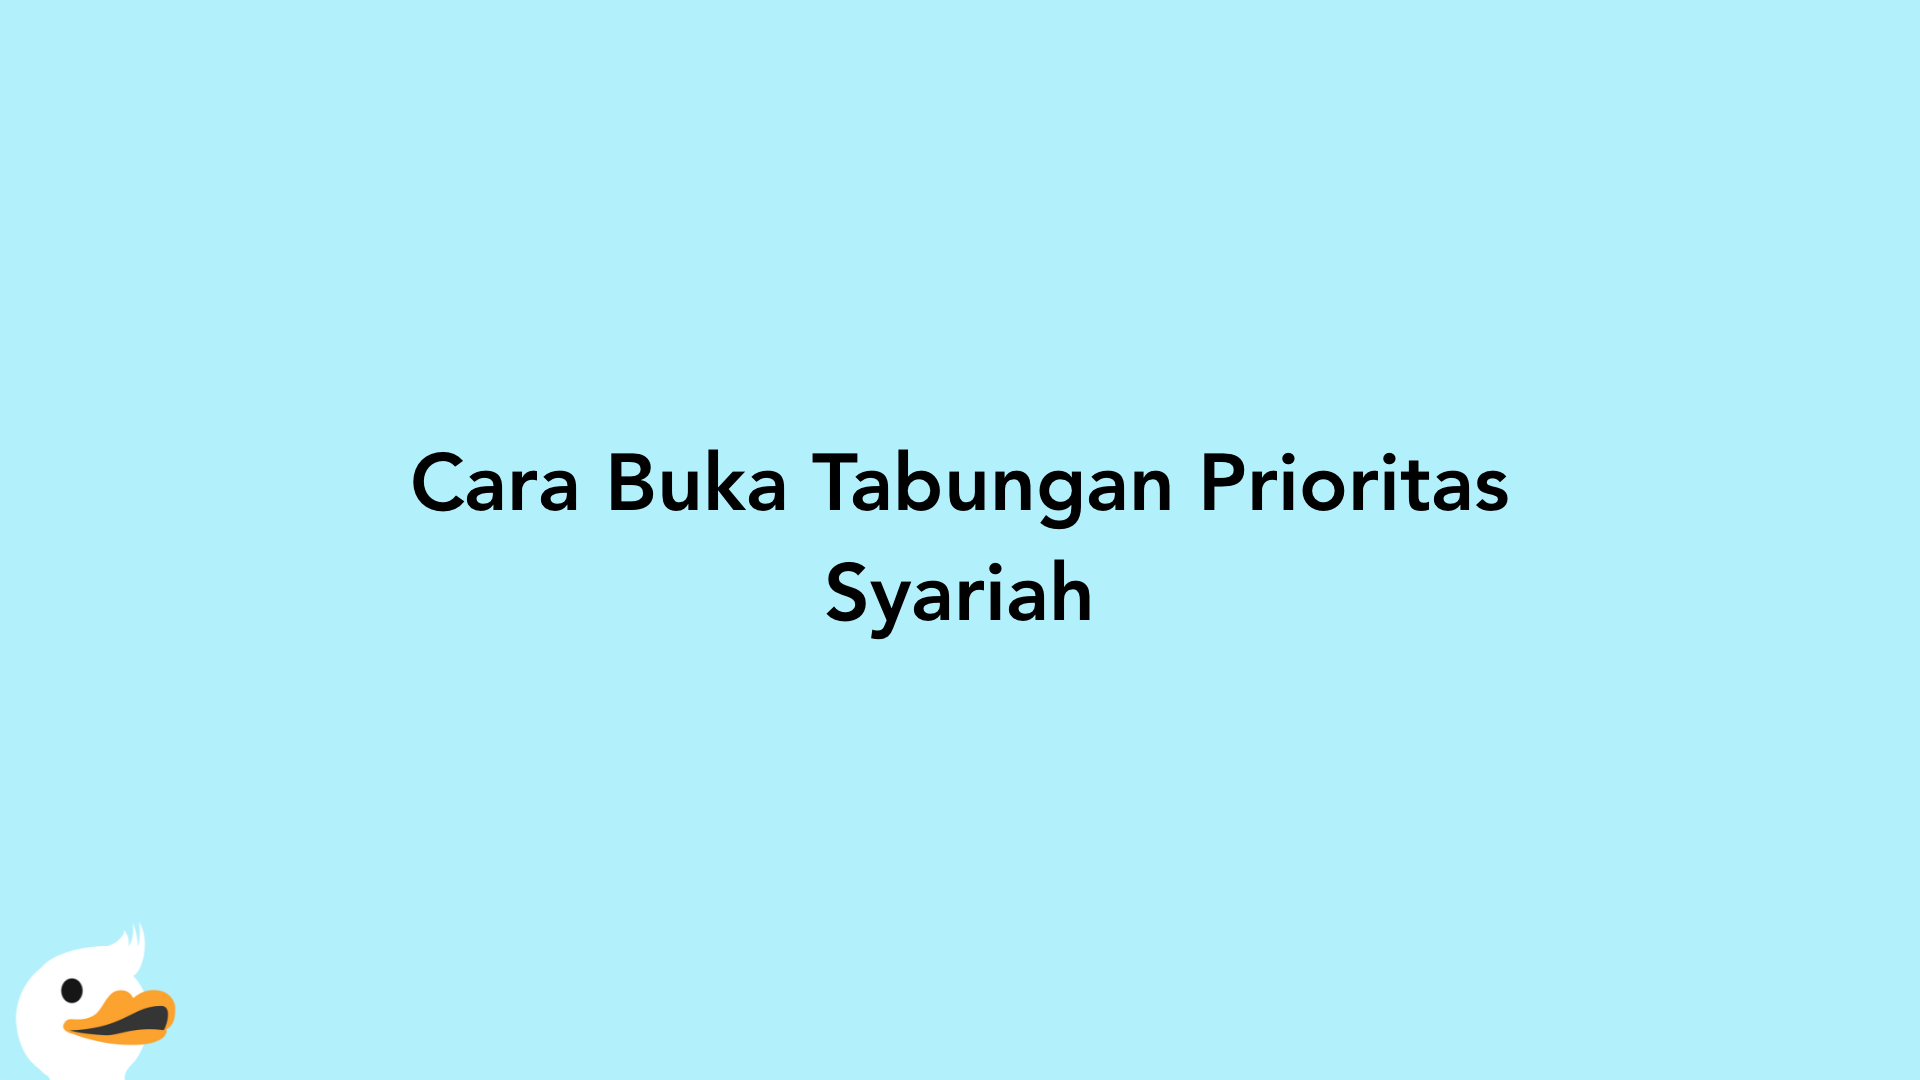 Cara Buka Tabungan Prioritas Syariah